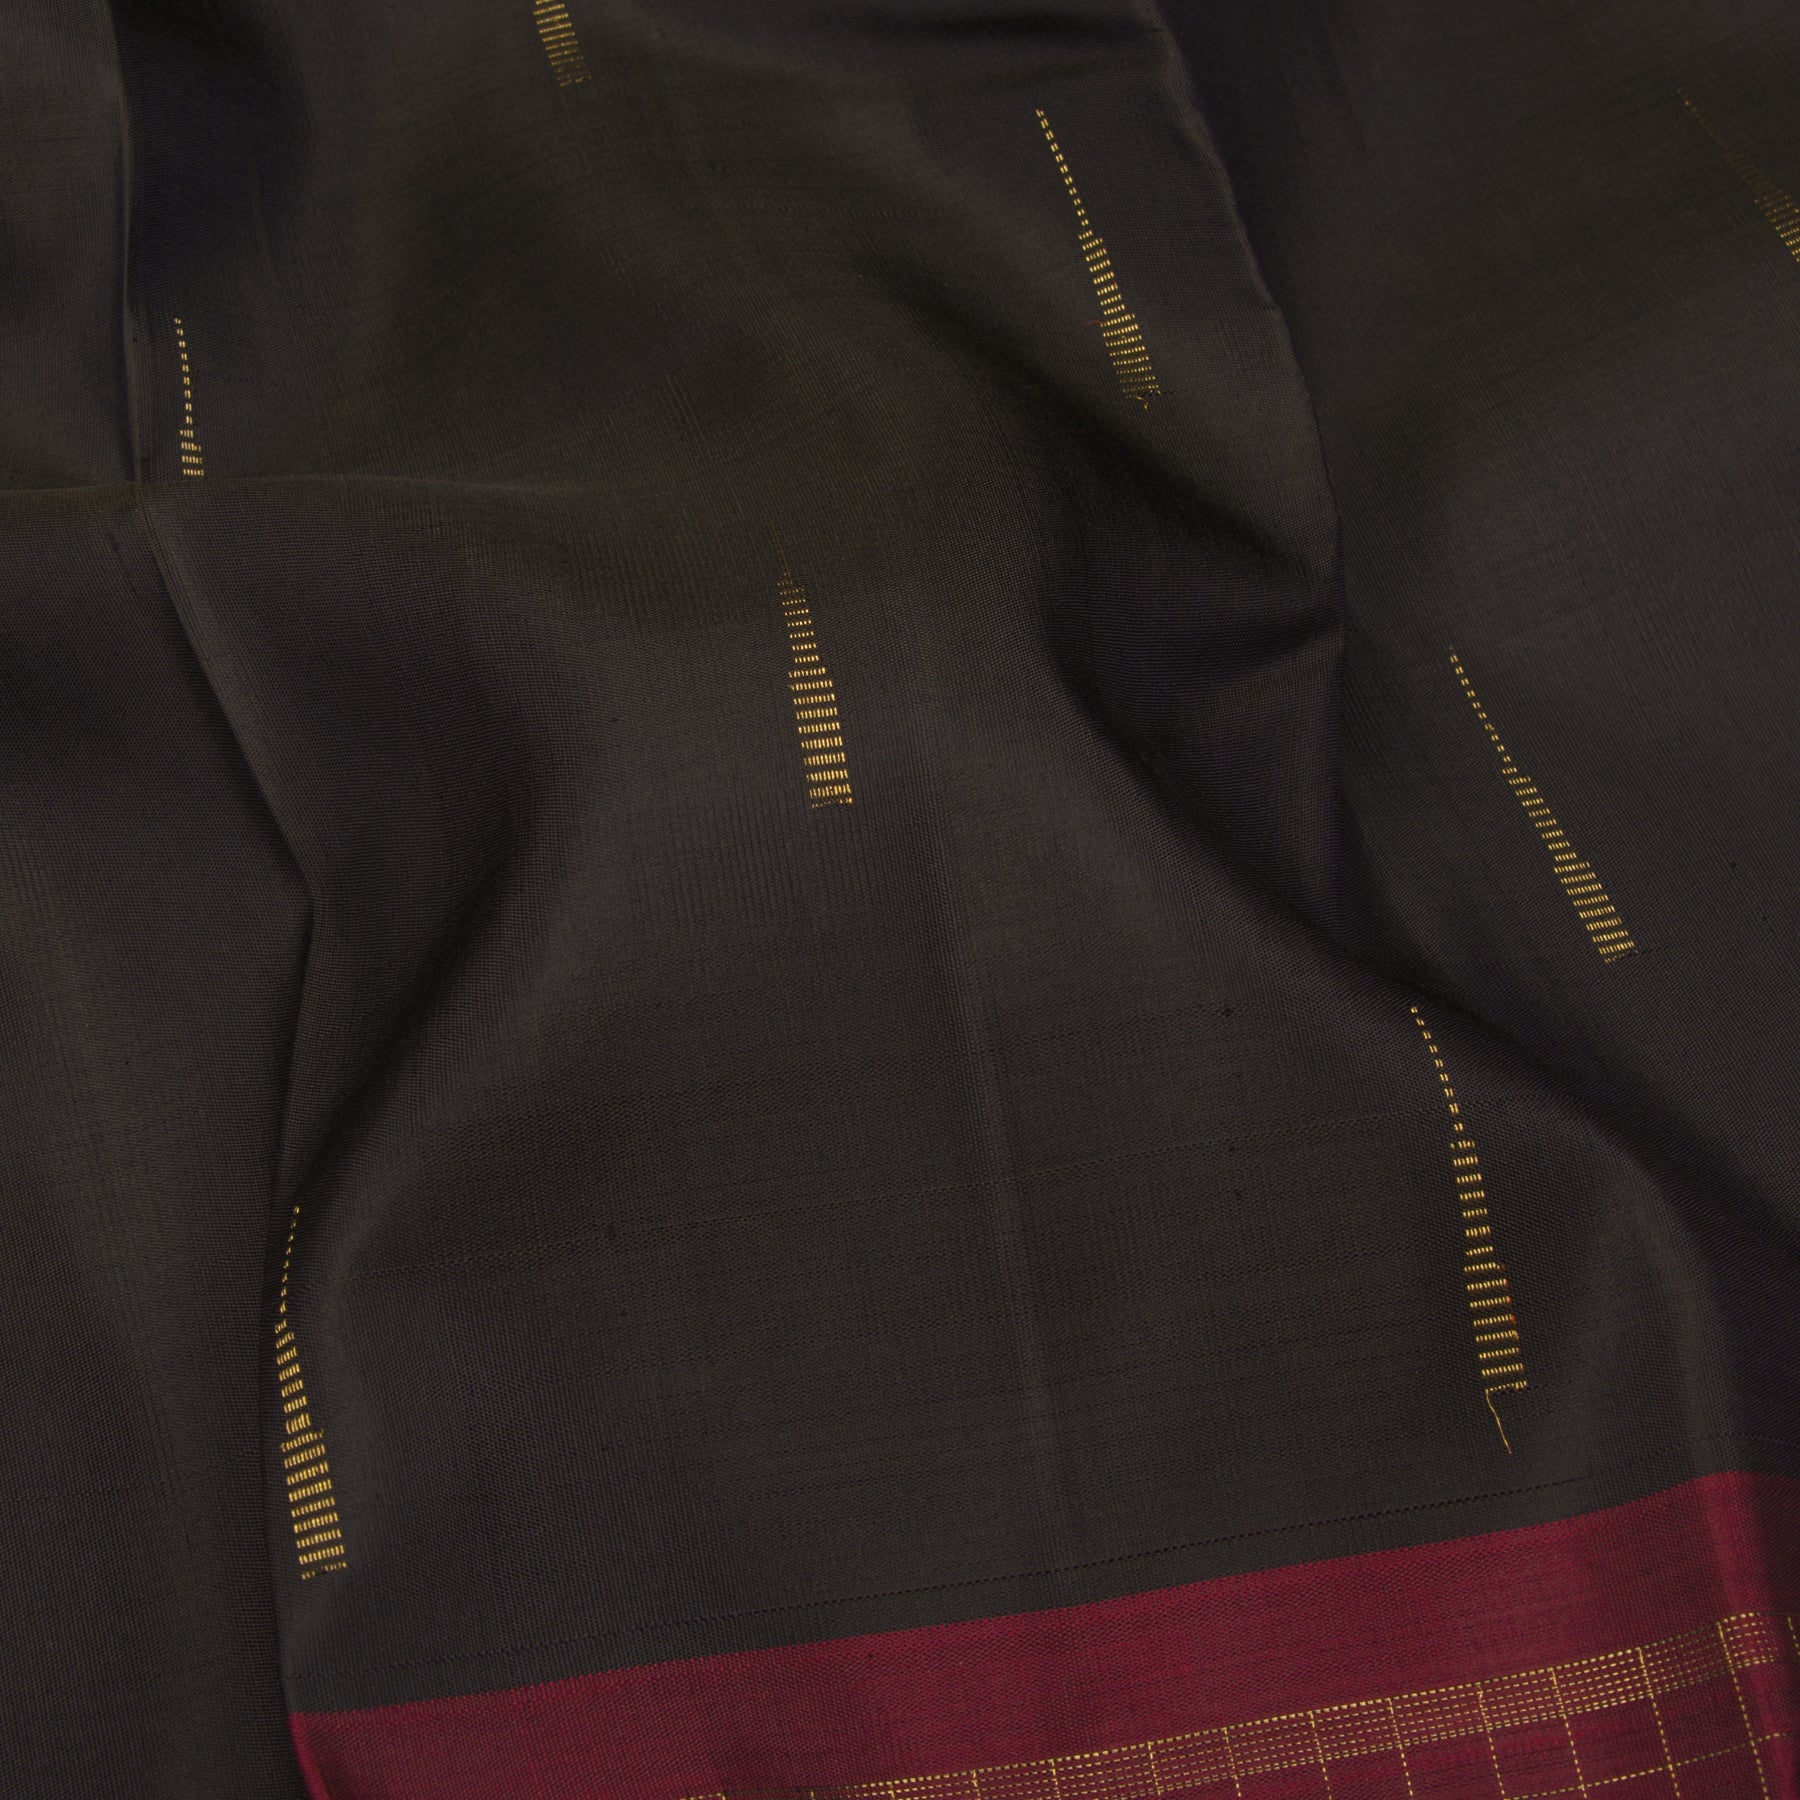 Kanakavalli Kanjivaram Silk Sari 23-595-HS001-09377 - Fabric View